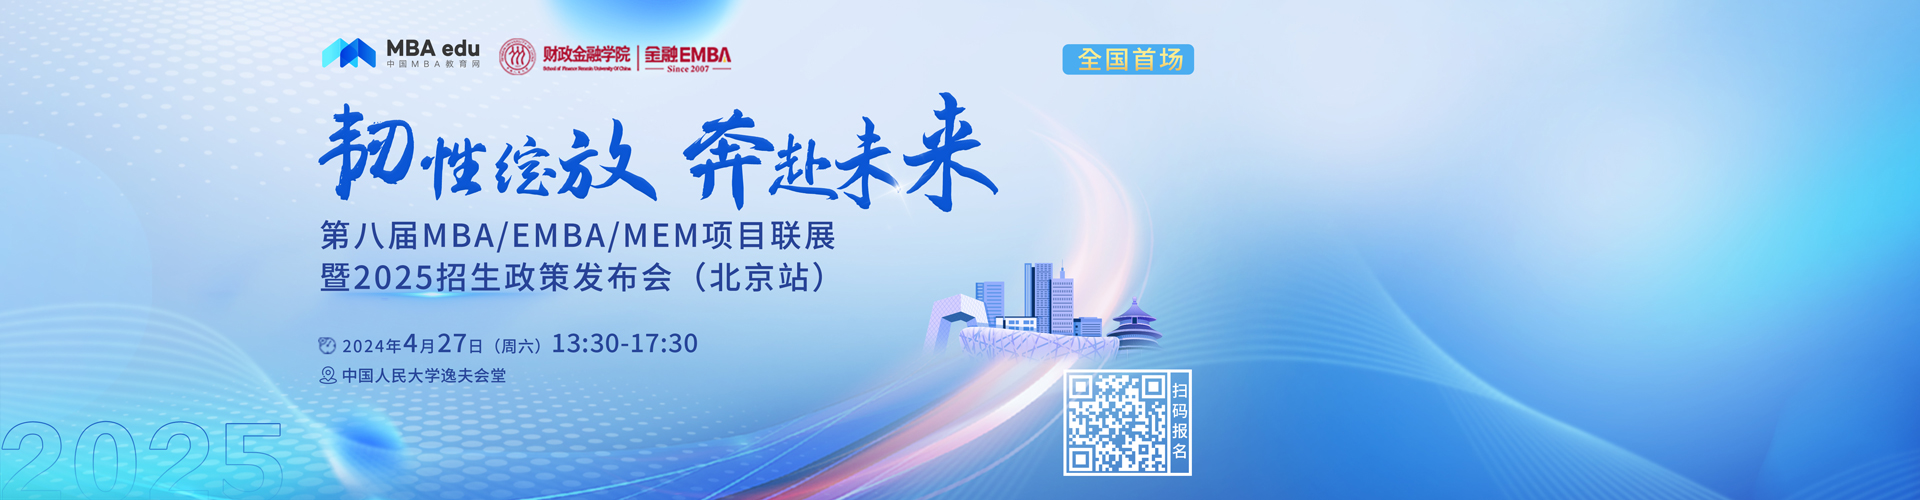 第八届MBA/EMBA/MEM项目联展暨2025招生政策发布会(北京站)